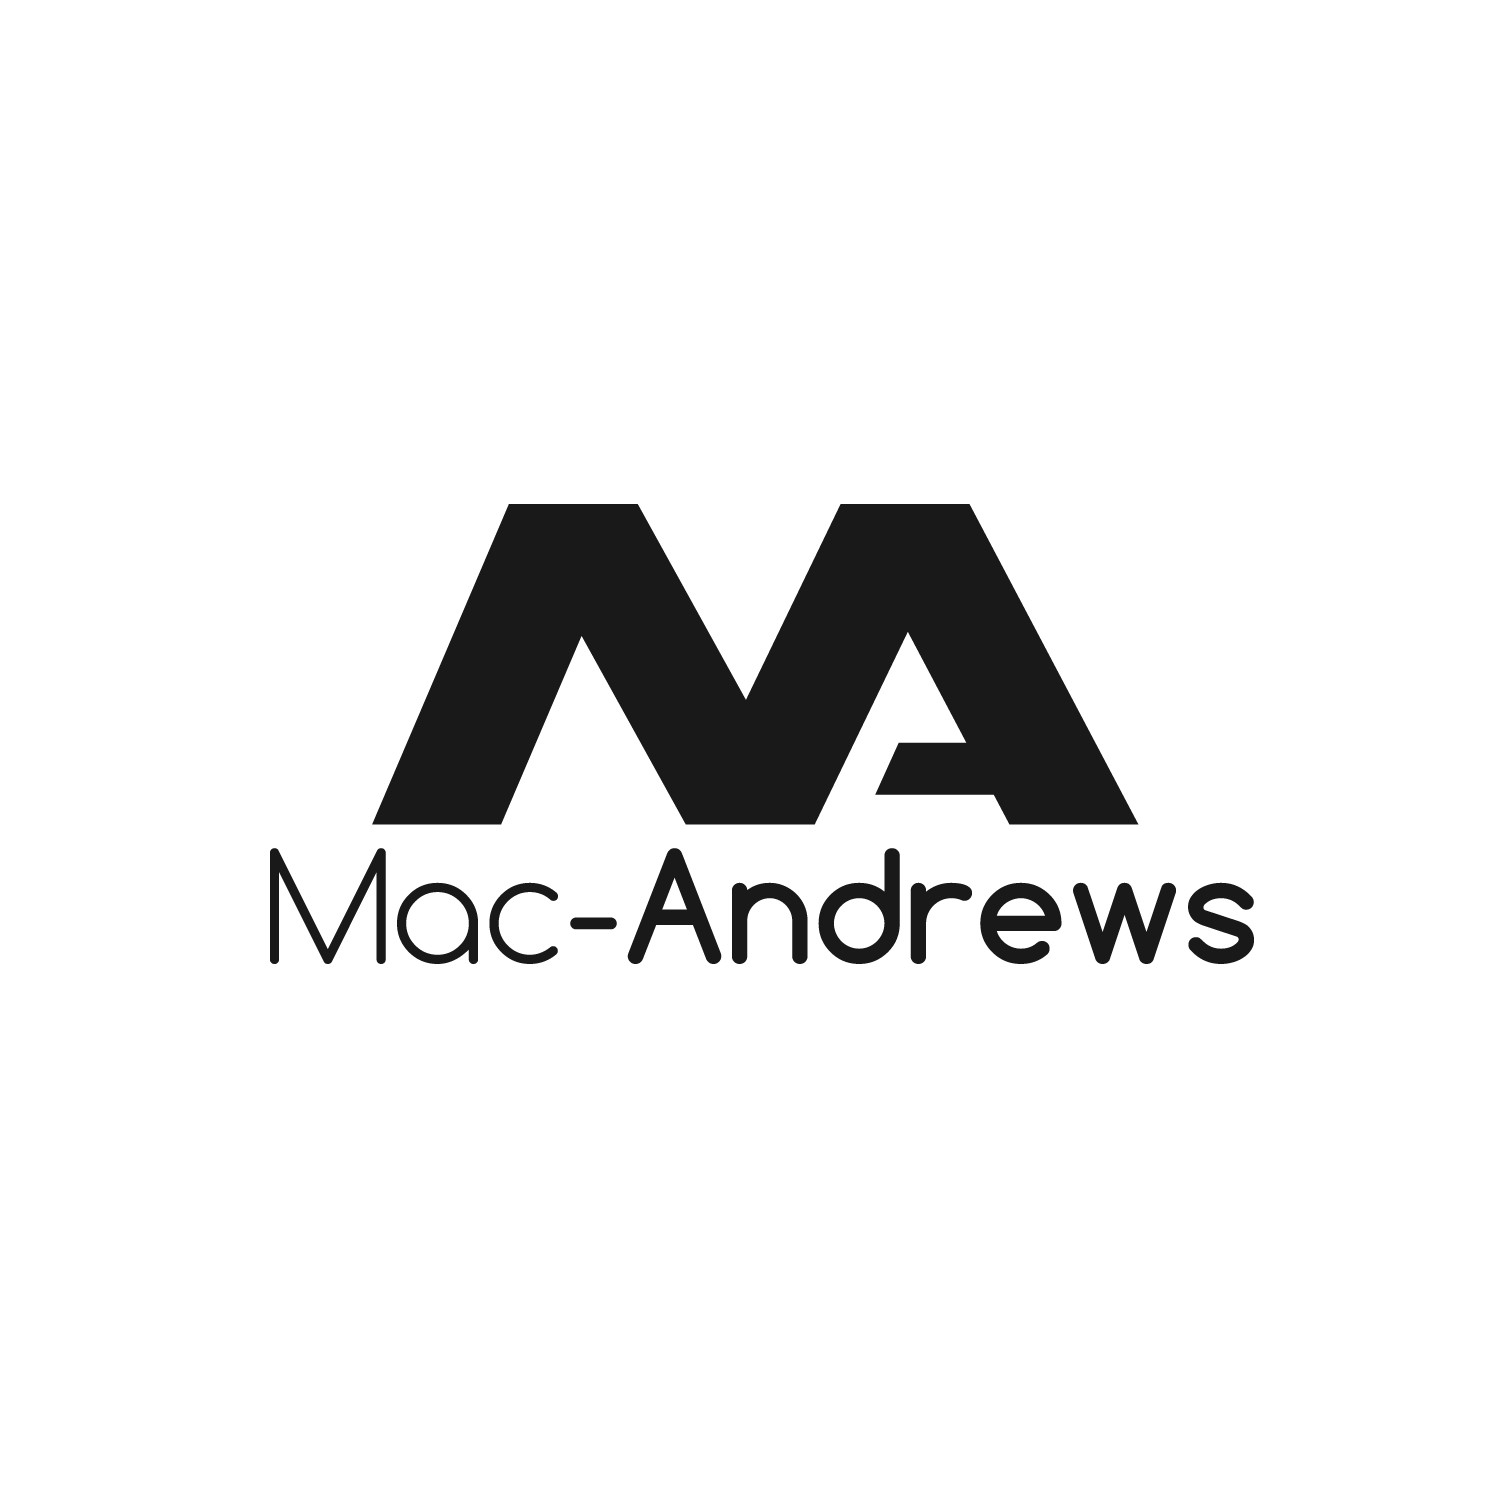 Mac-Andrews